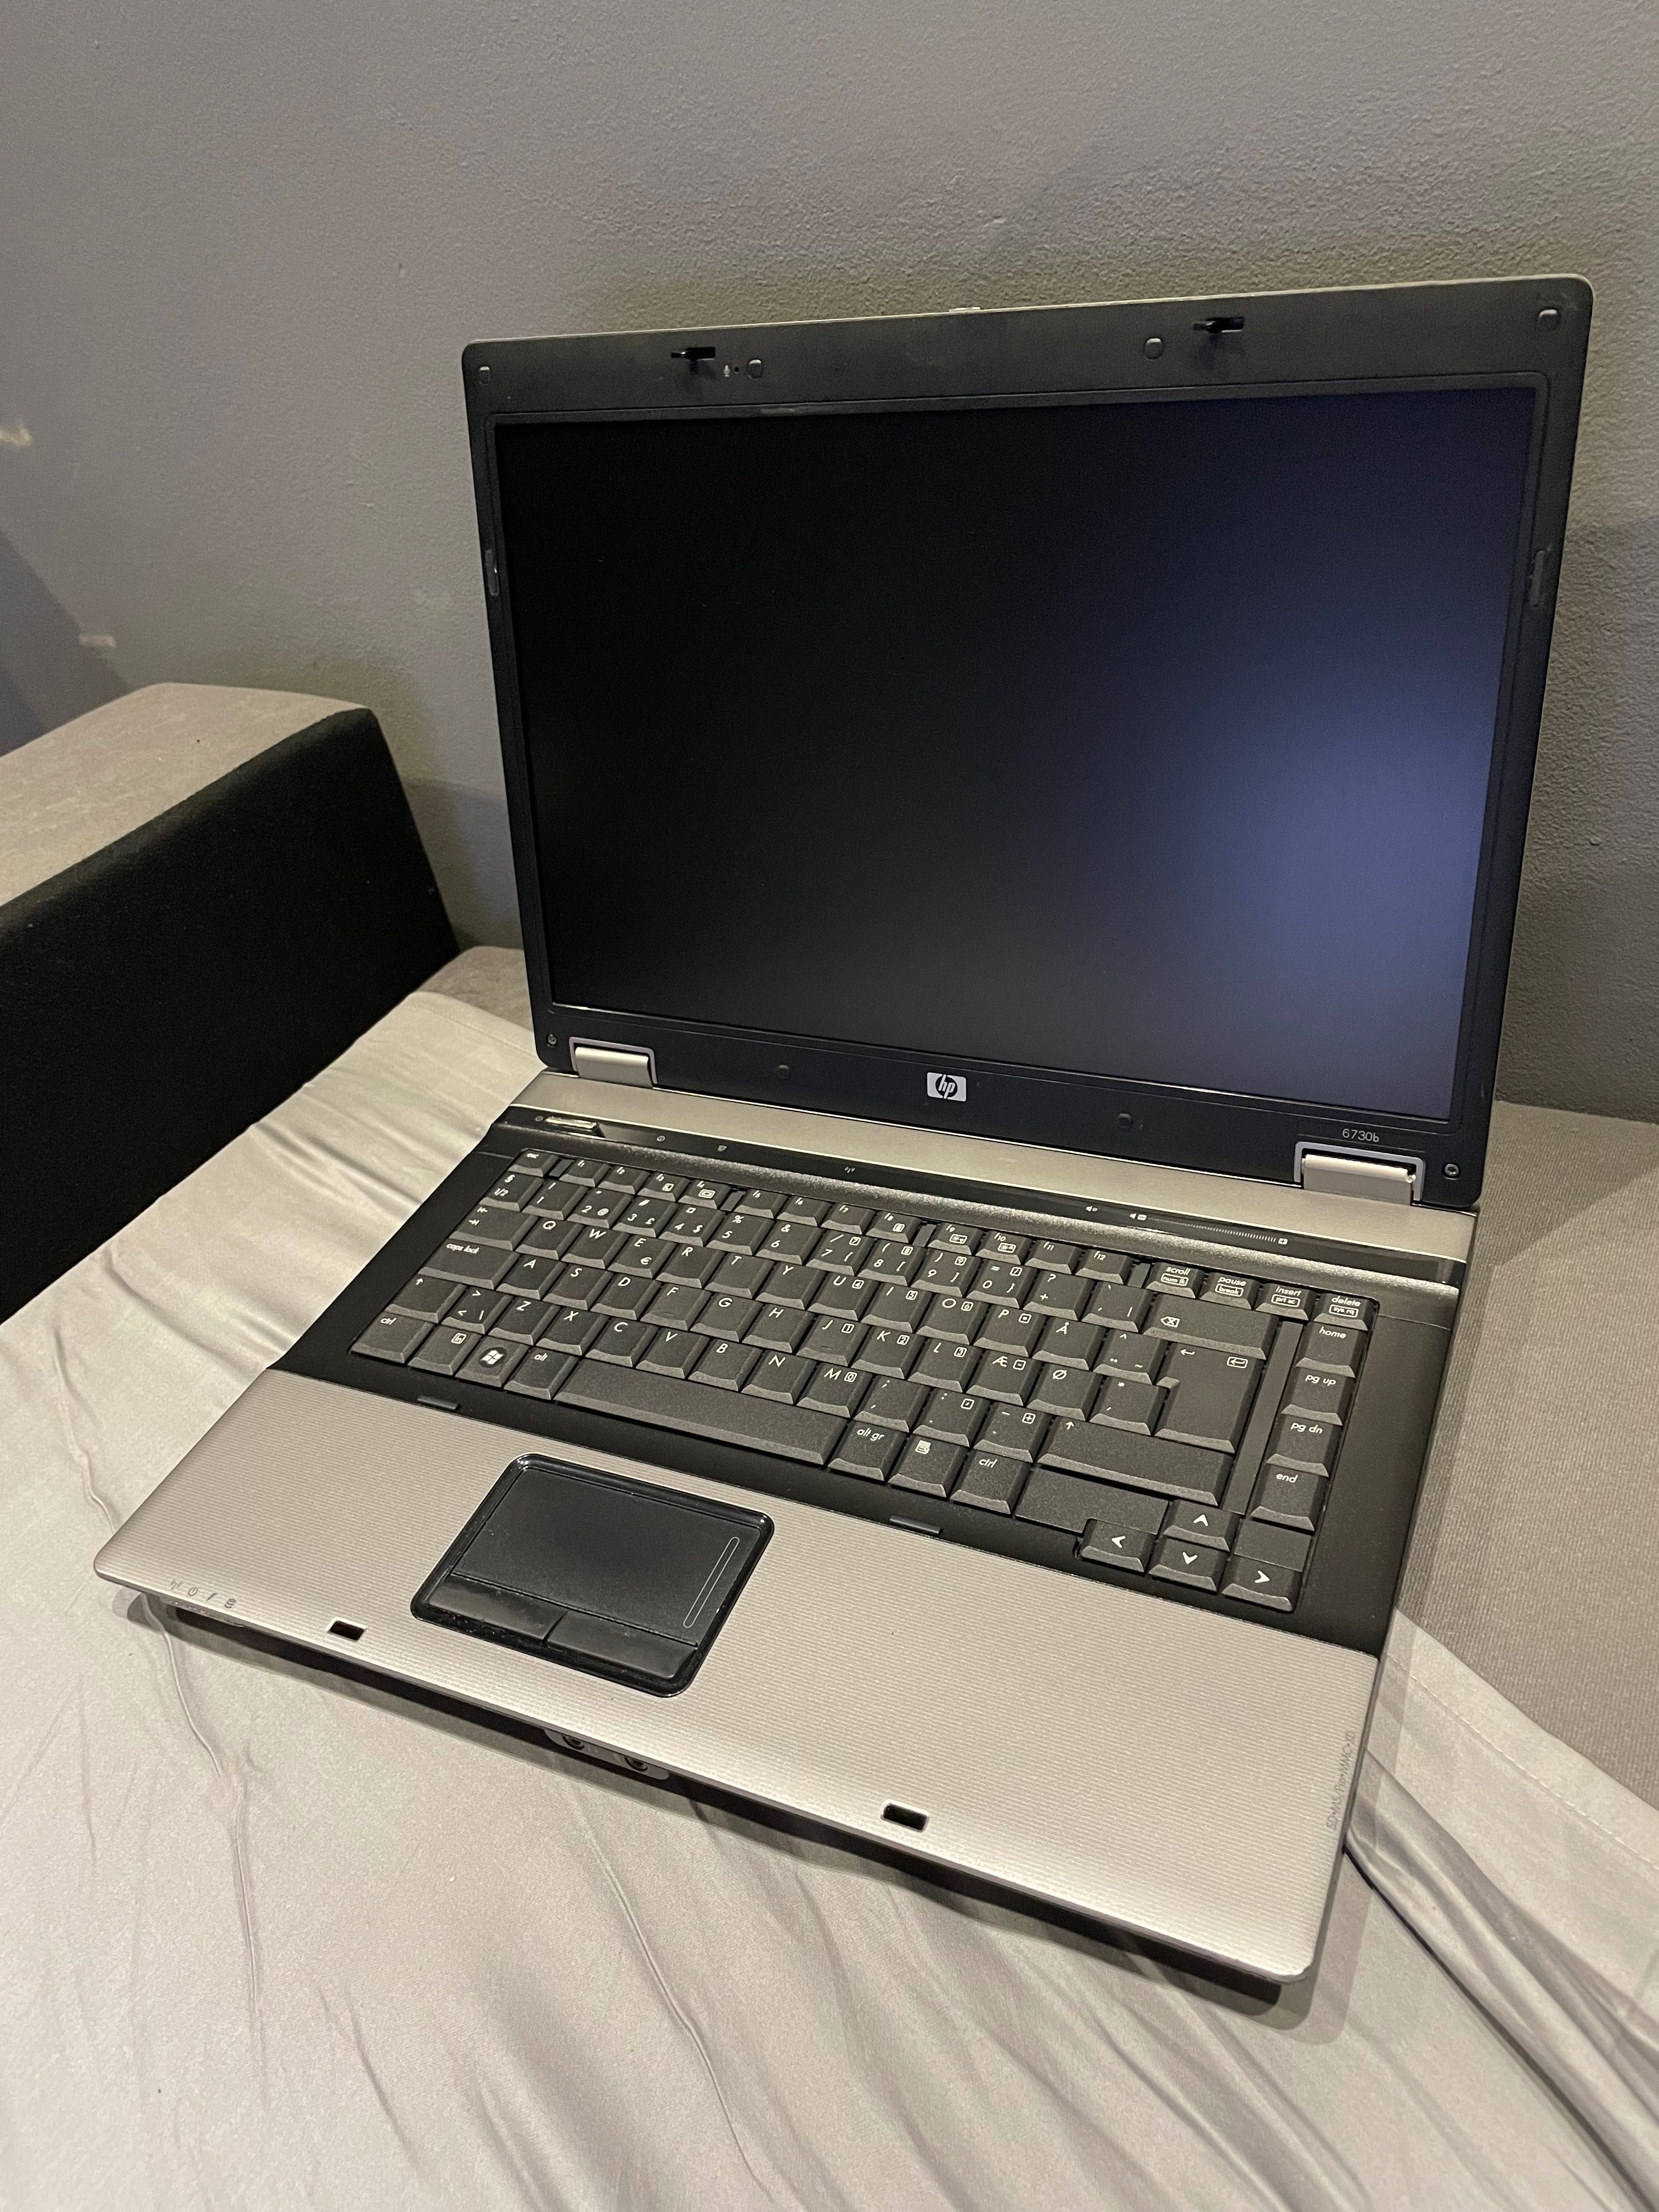 Laptop hp 6730b sprawny